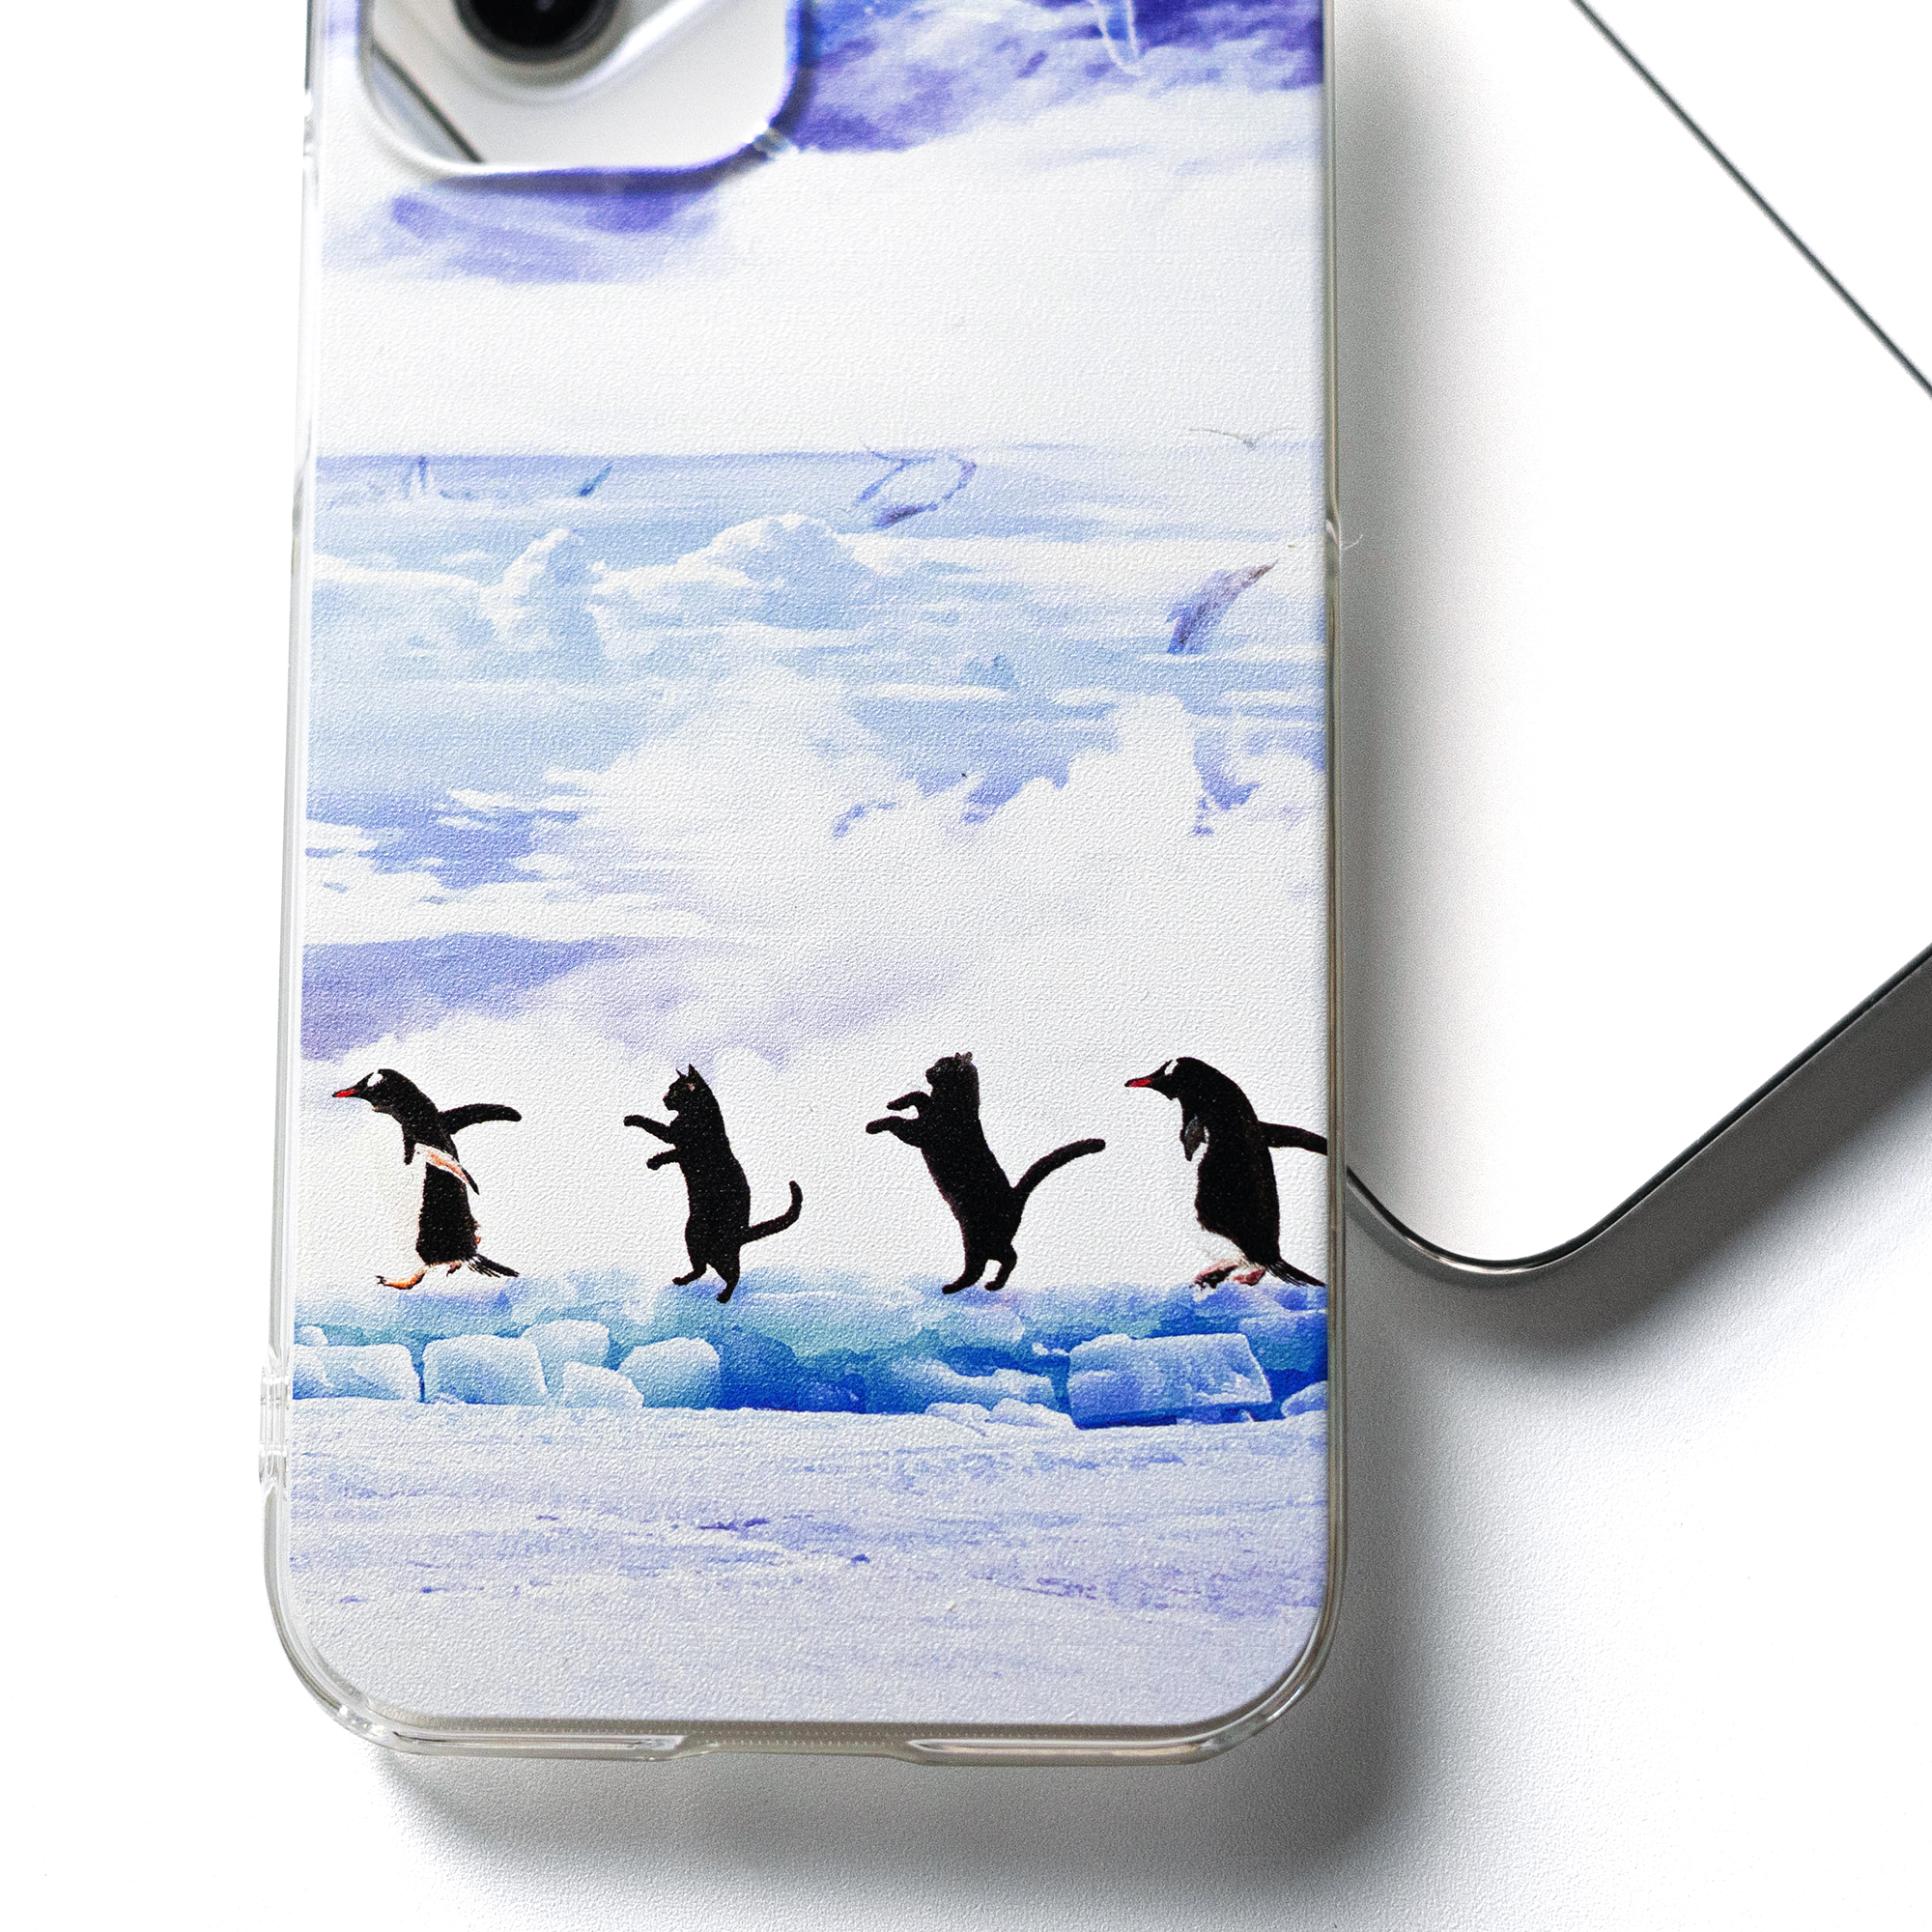 注文後の変更キャンセル返品 Iphone 11 Pro 泳ぐ ペンギン スマホケース アートケース スマートフォン カバー Seiwa Hd Com